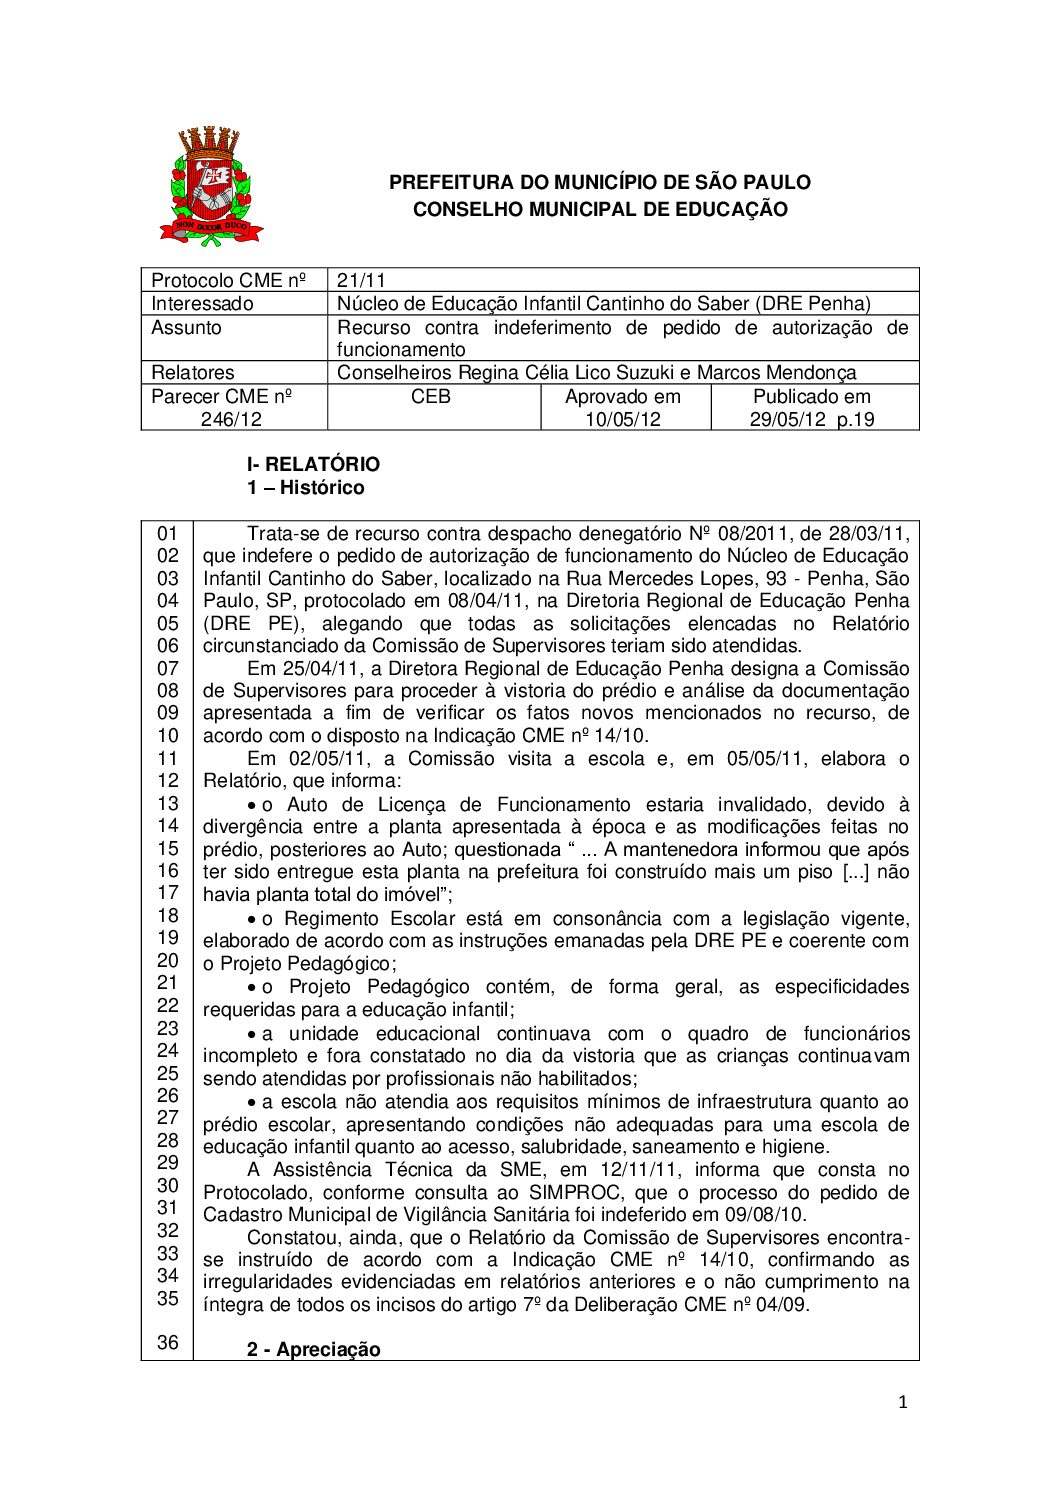 Parecer CME nº 246/2012 - Núcleo de Educação Infantil Cantinho do Saber (DRE Penha) - Recurso contra indeferimento de pedido de autorização de funcionamento 